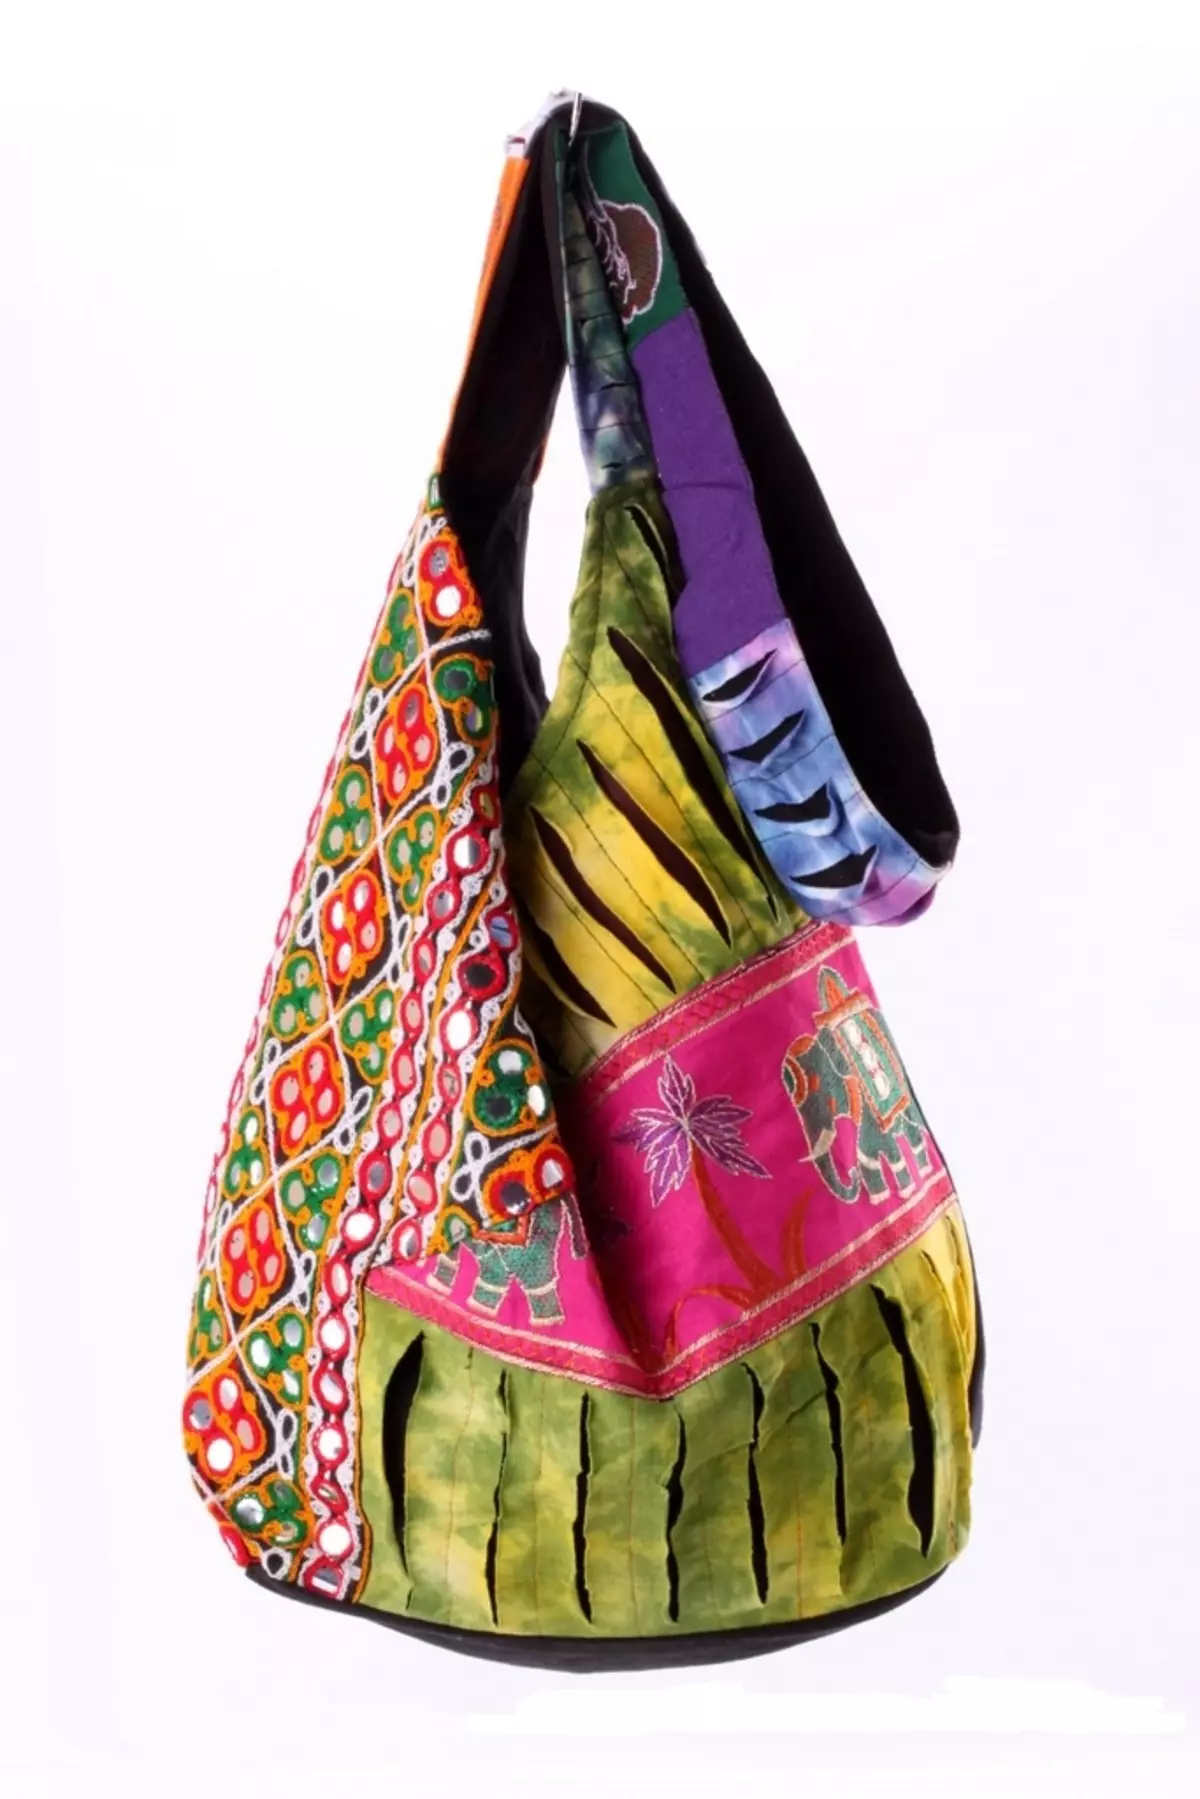 Tekstilposer (86 bilder): Kvinners stilfulle foldingsposer fra tekstiler, merke MOSHNA 2775_8